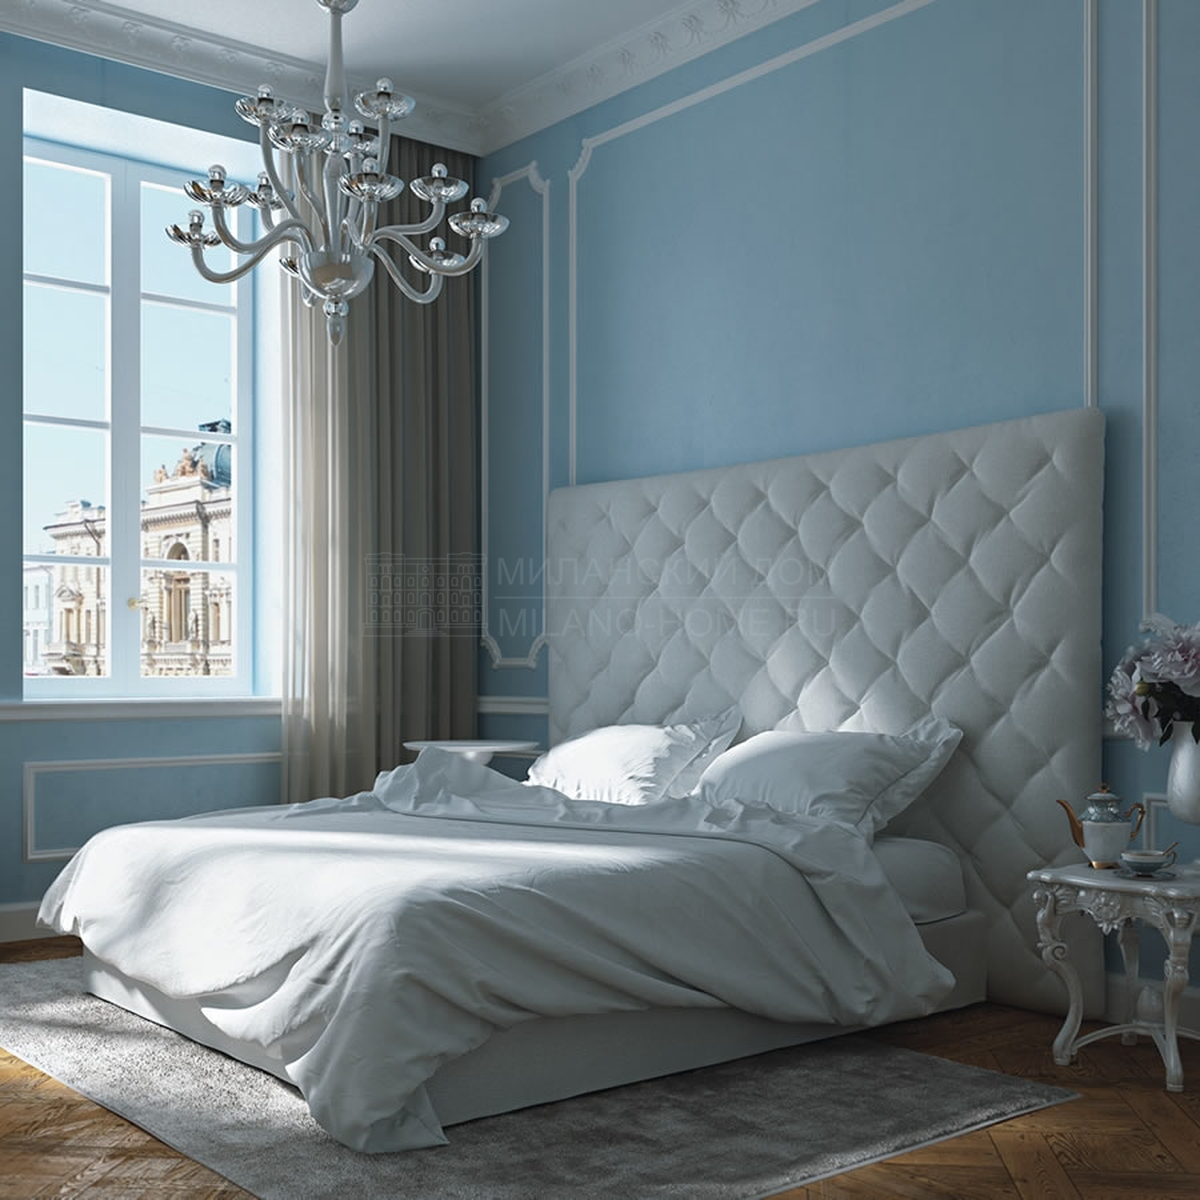 Двуспальная кровать Amalia bed из Италии фабрики ASNAGHI / INEDITO